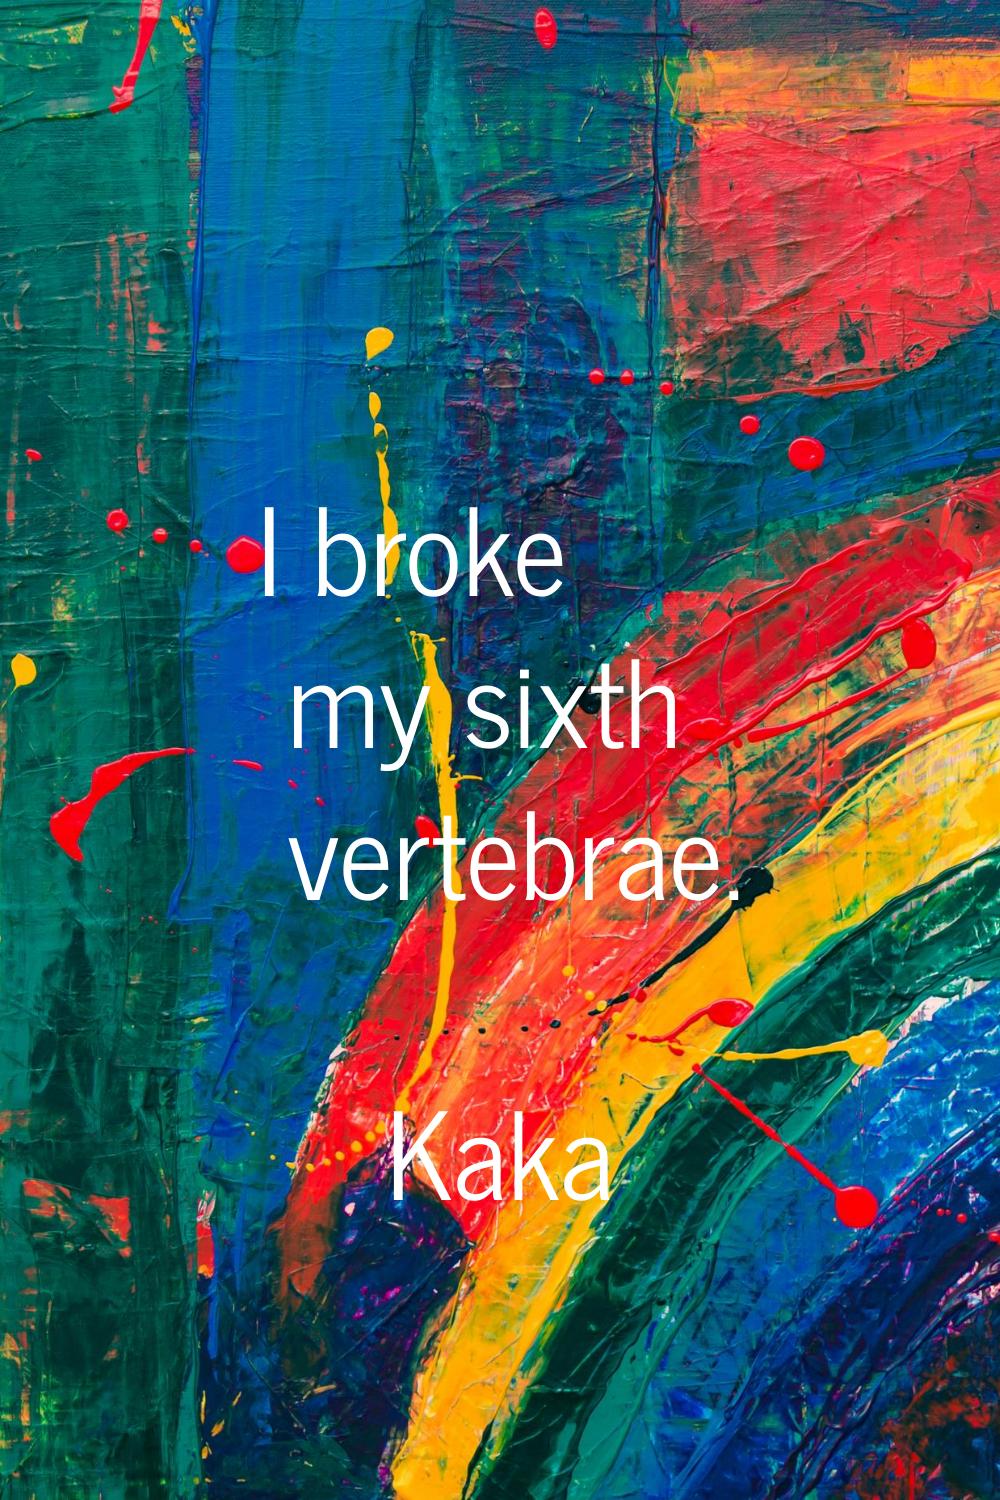 I broke my sixth vertebrae.